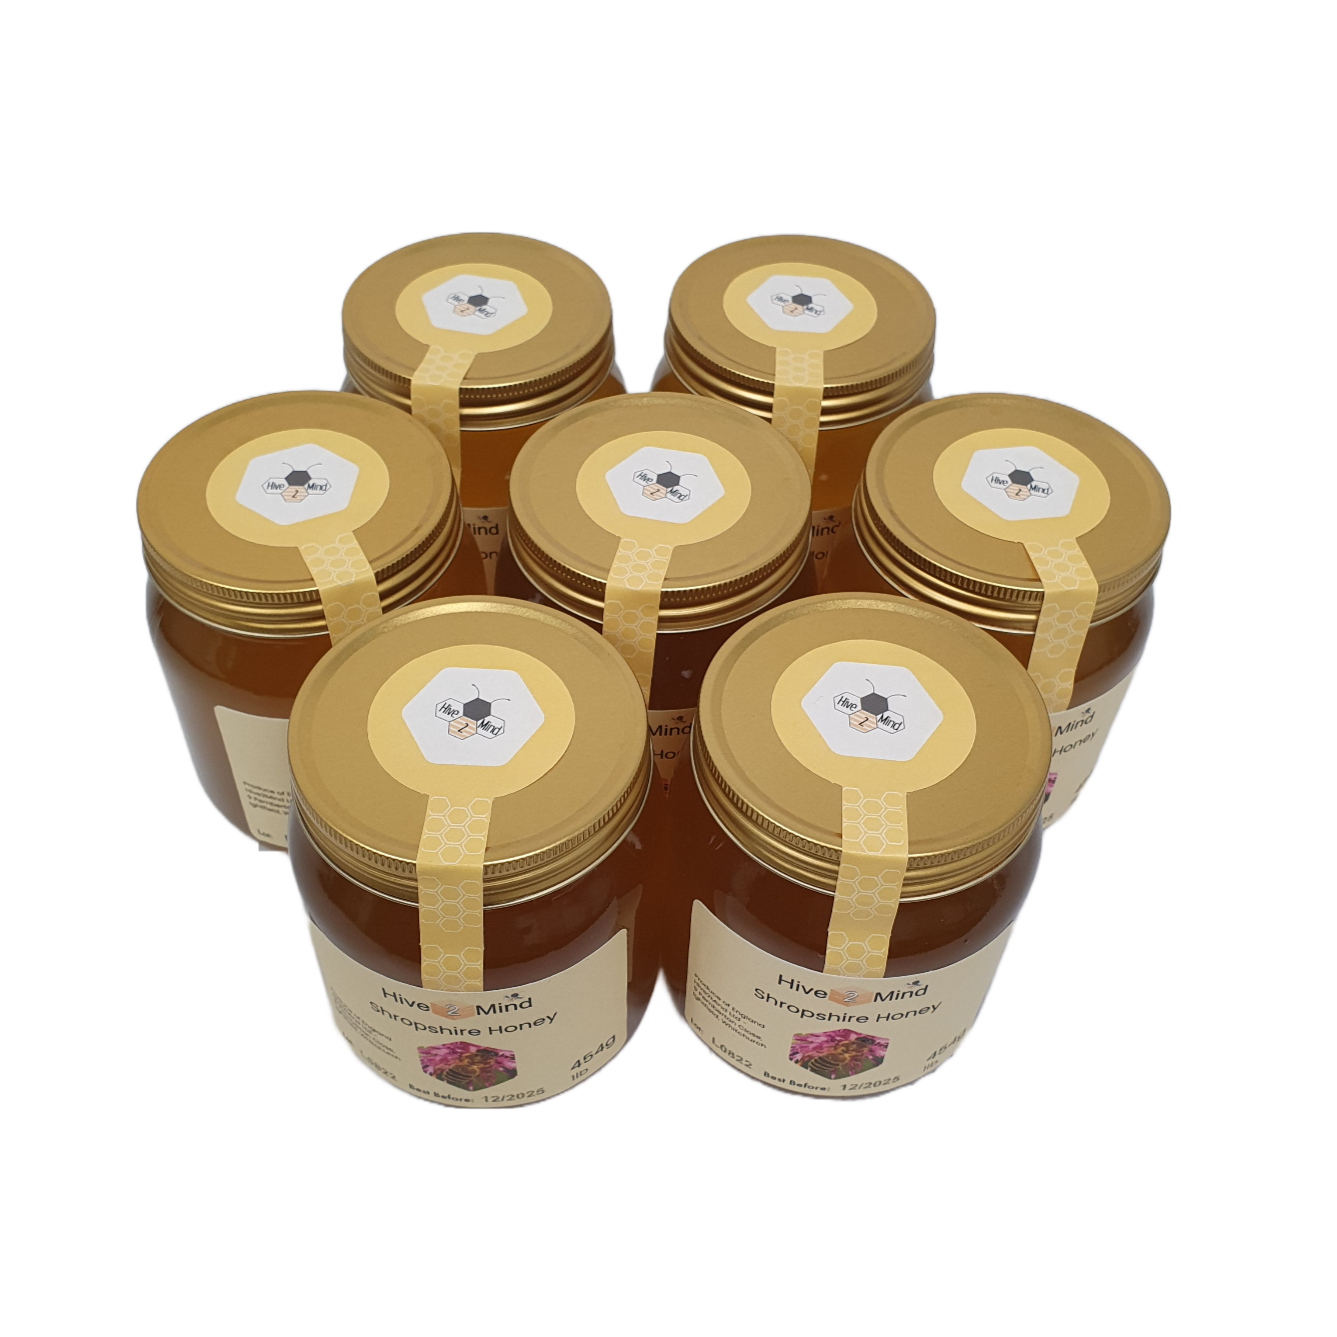 Runny Honey - 1lb jar